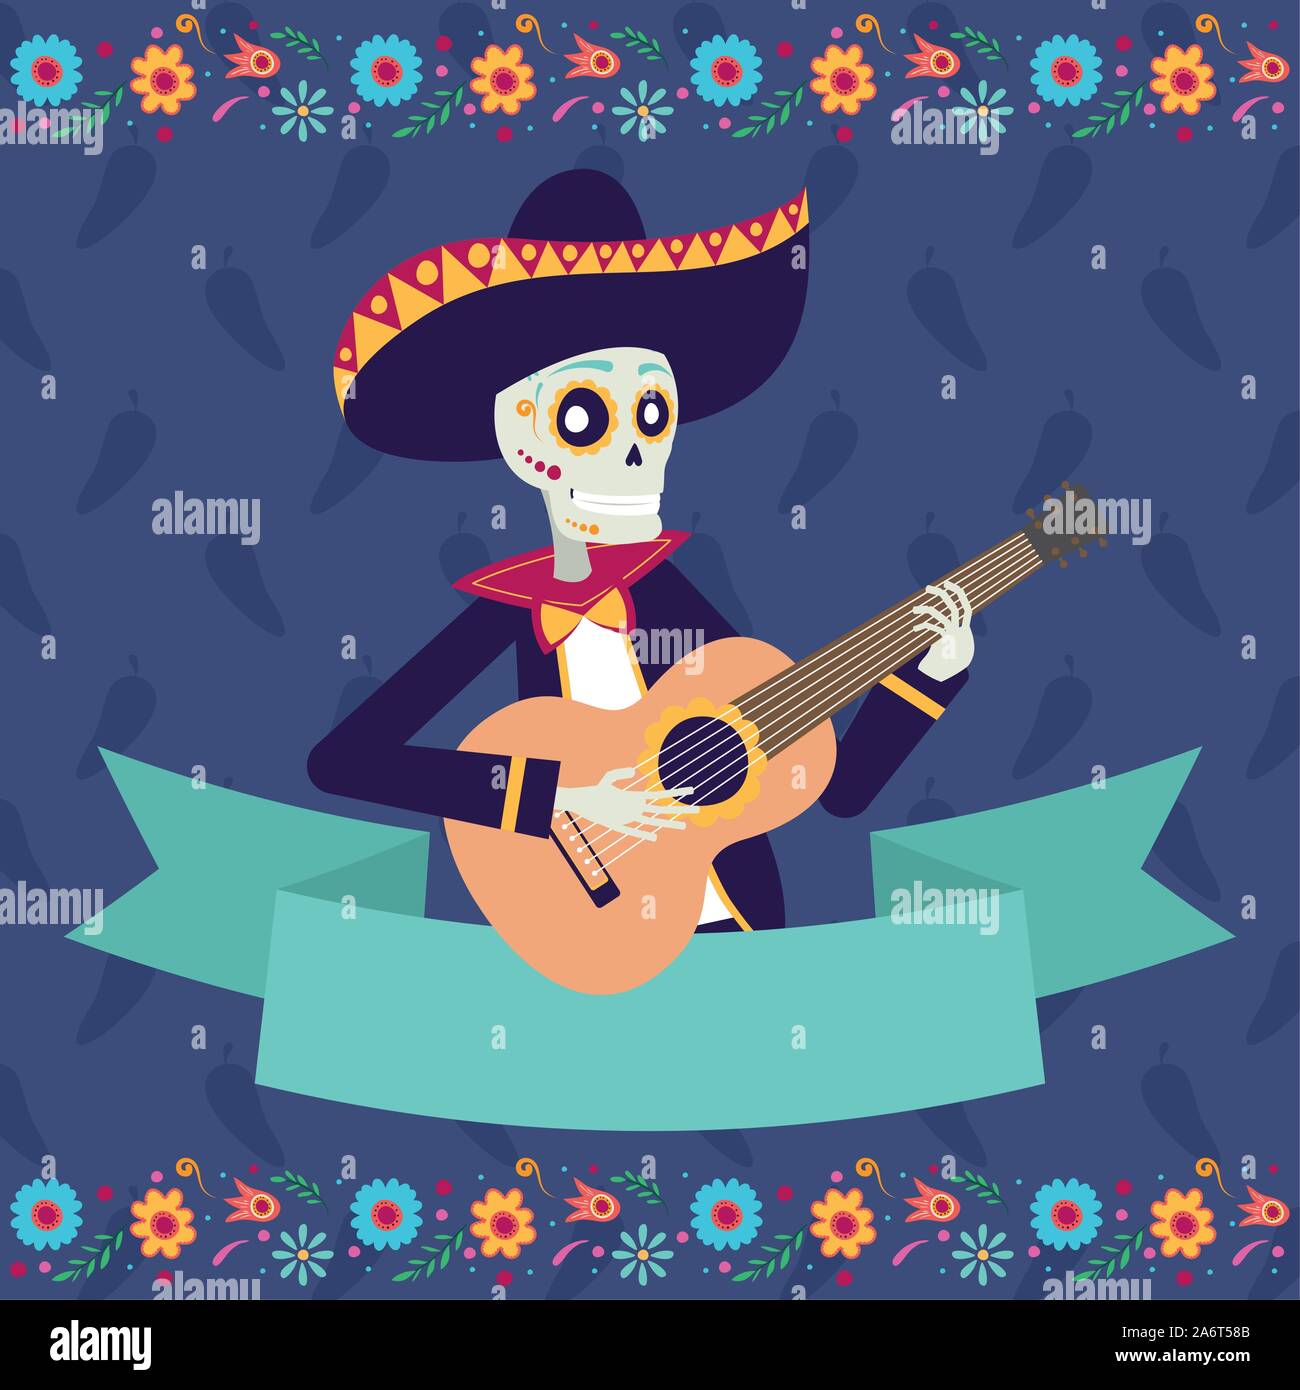 dia de los muertos card with mariachi skul Stock Vector